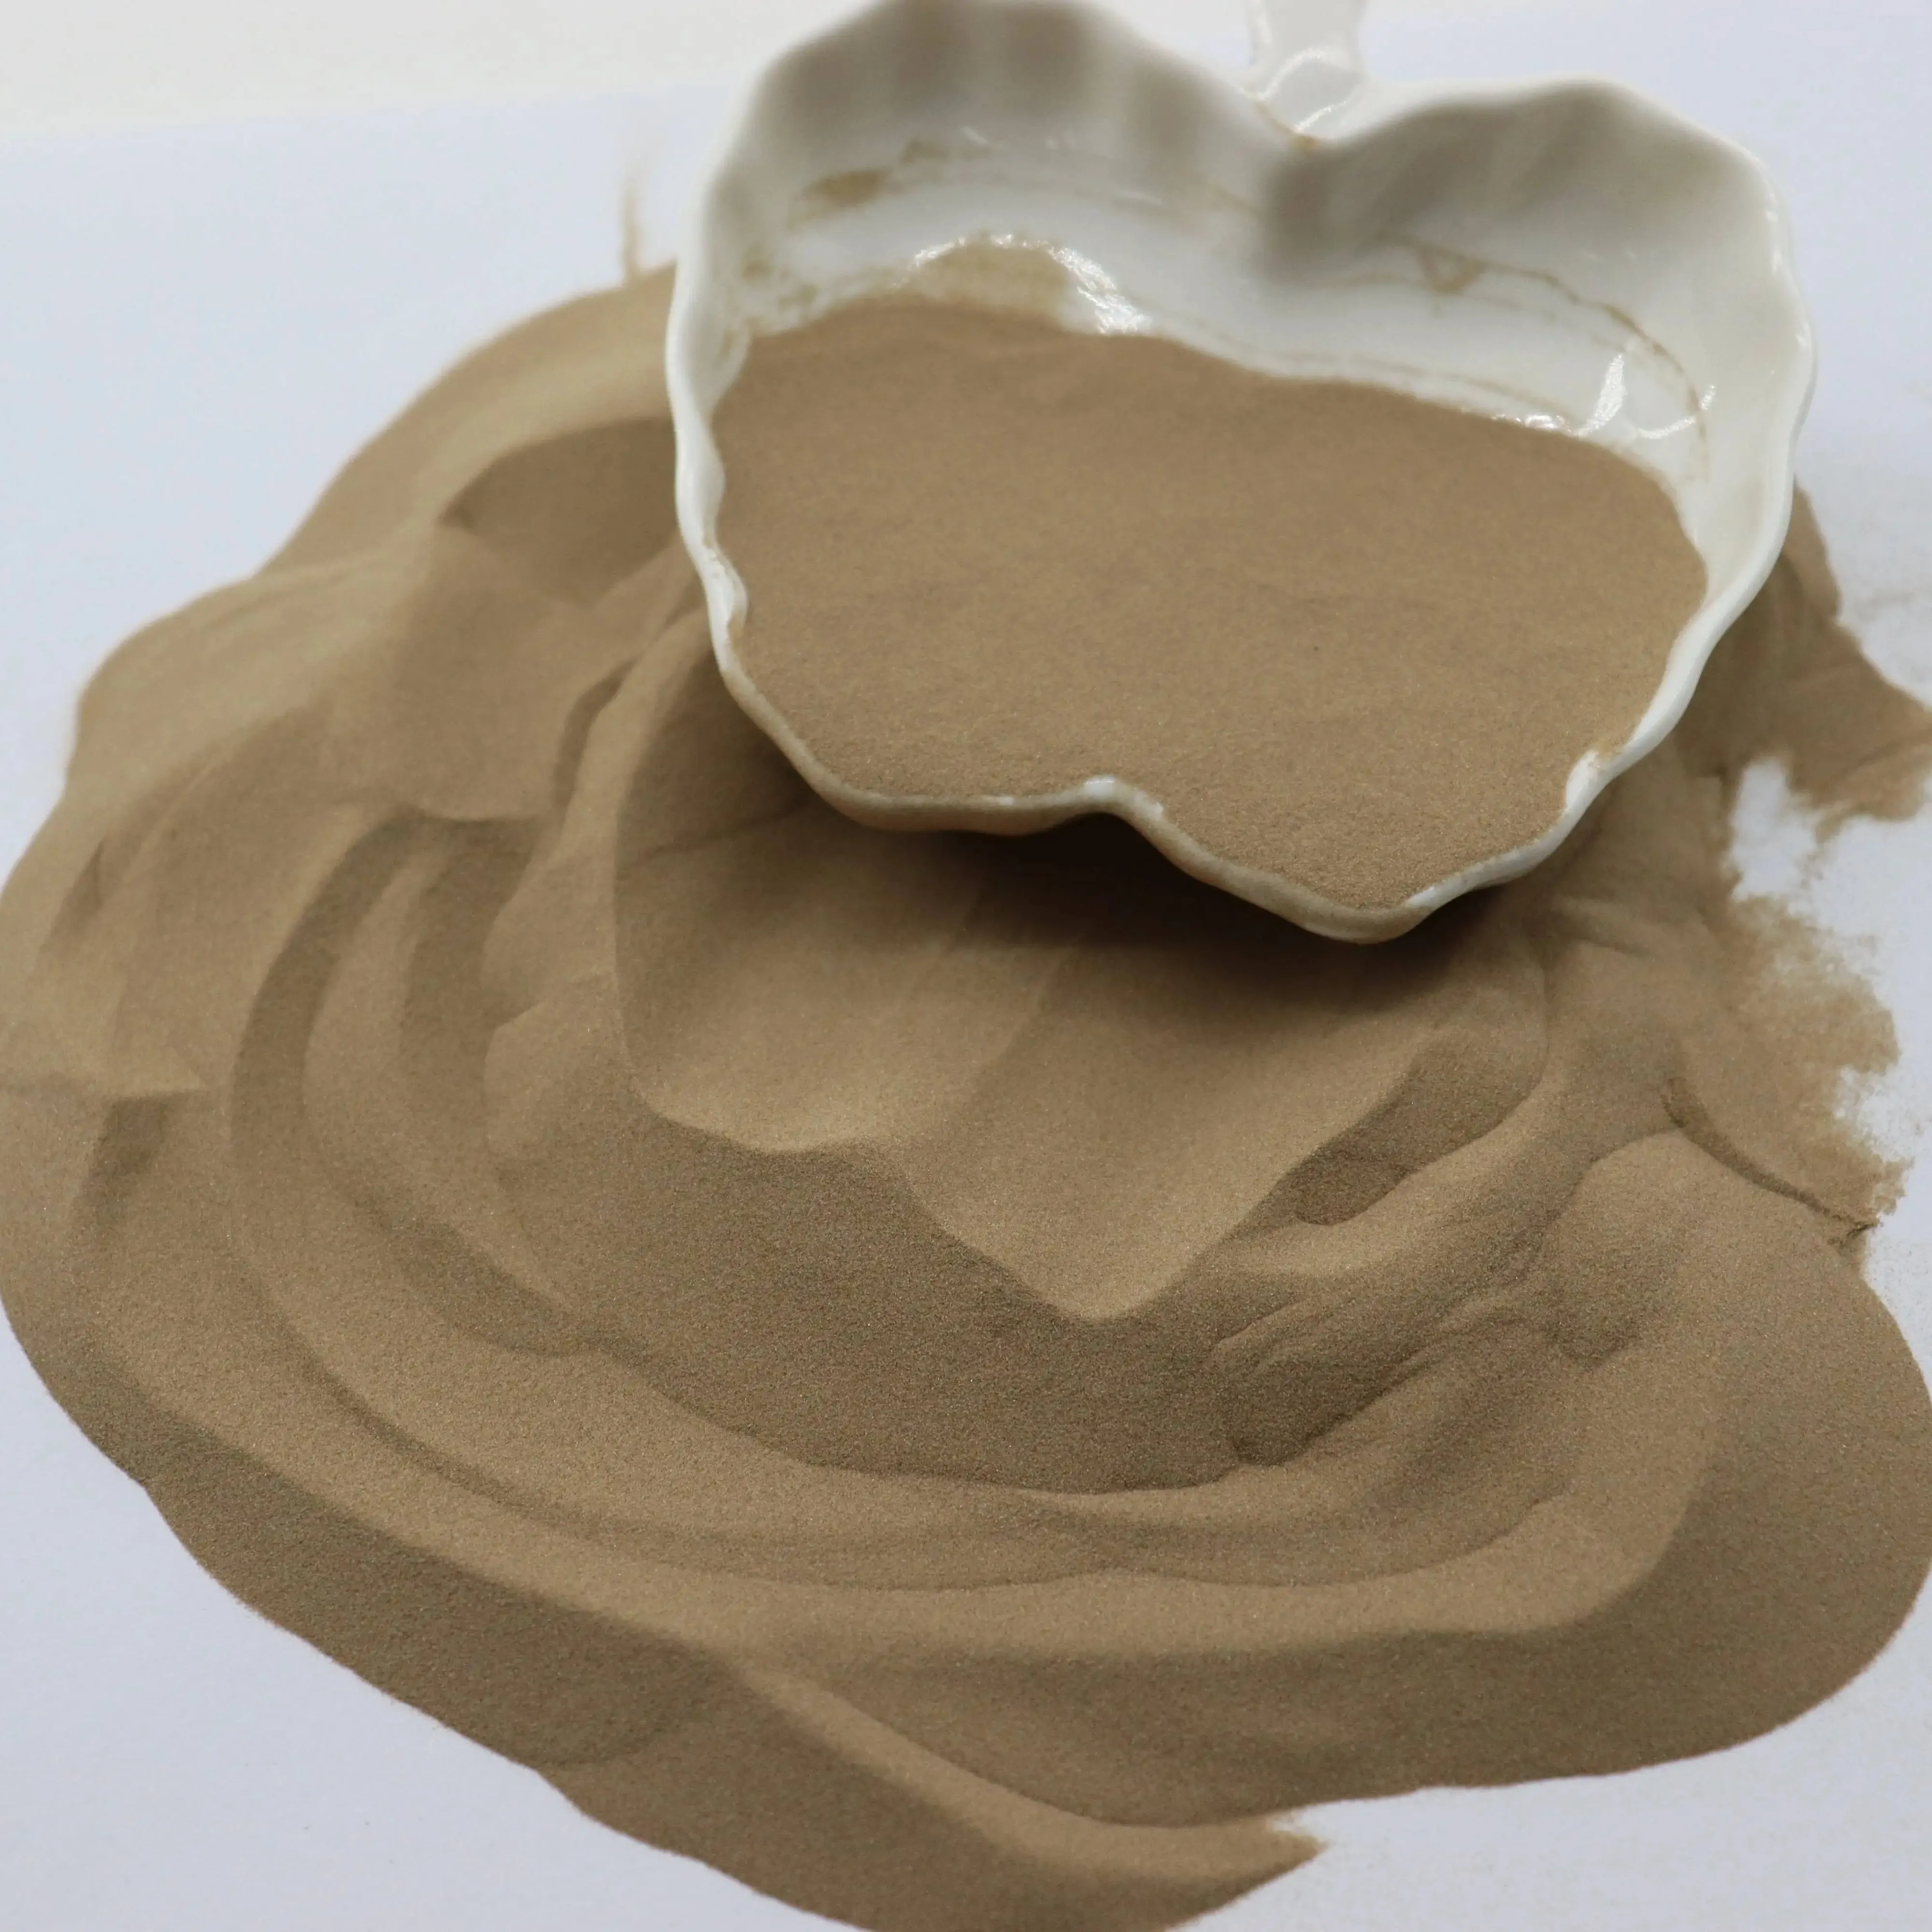 Arena de circón australiana de alta calidad 200 pureza de malla 65% Precio de arena de circón para fundición de cerámica refractaria